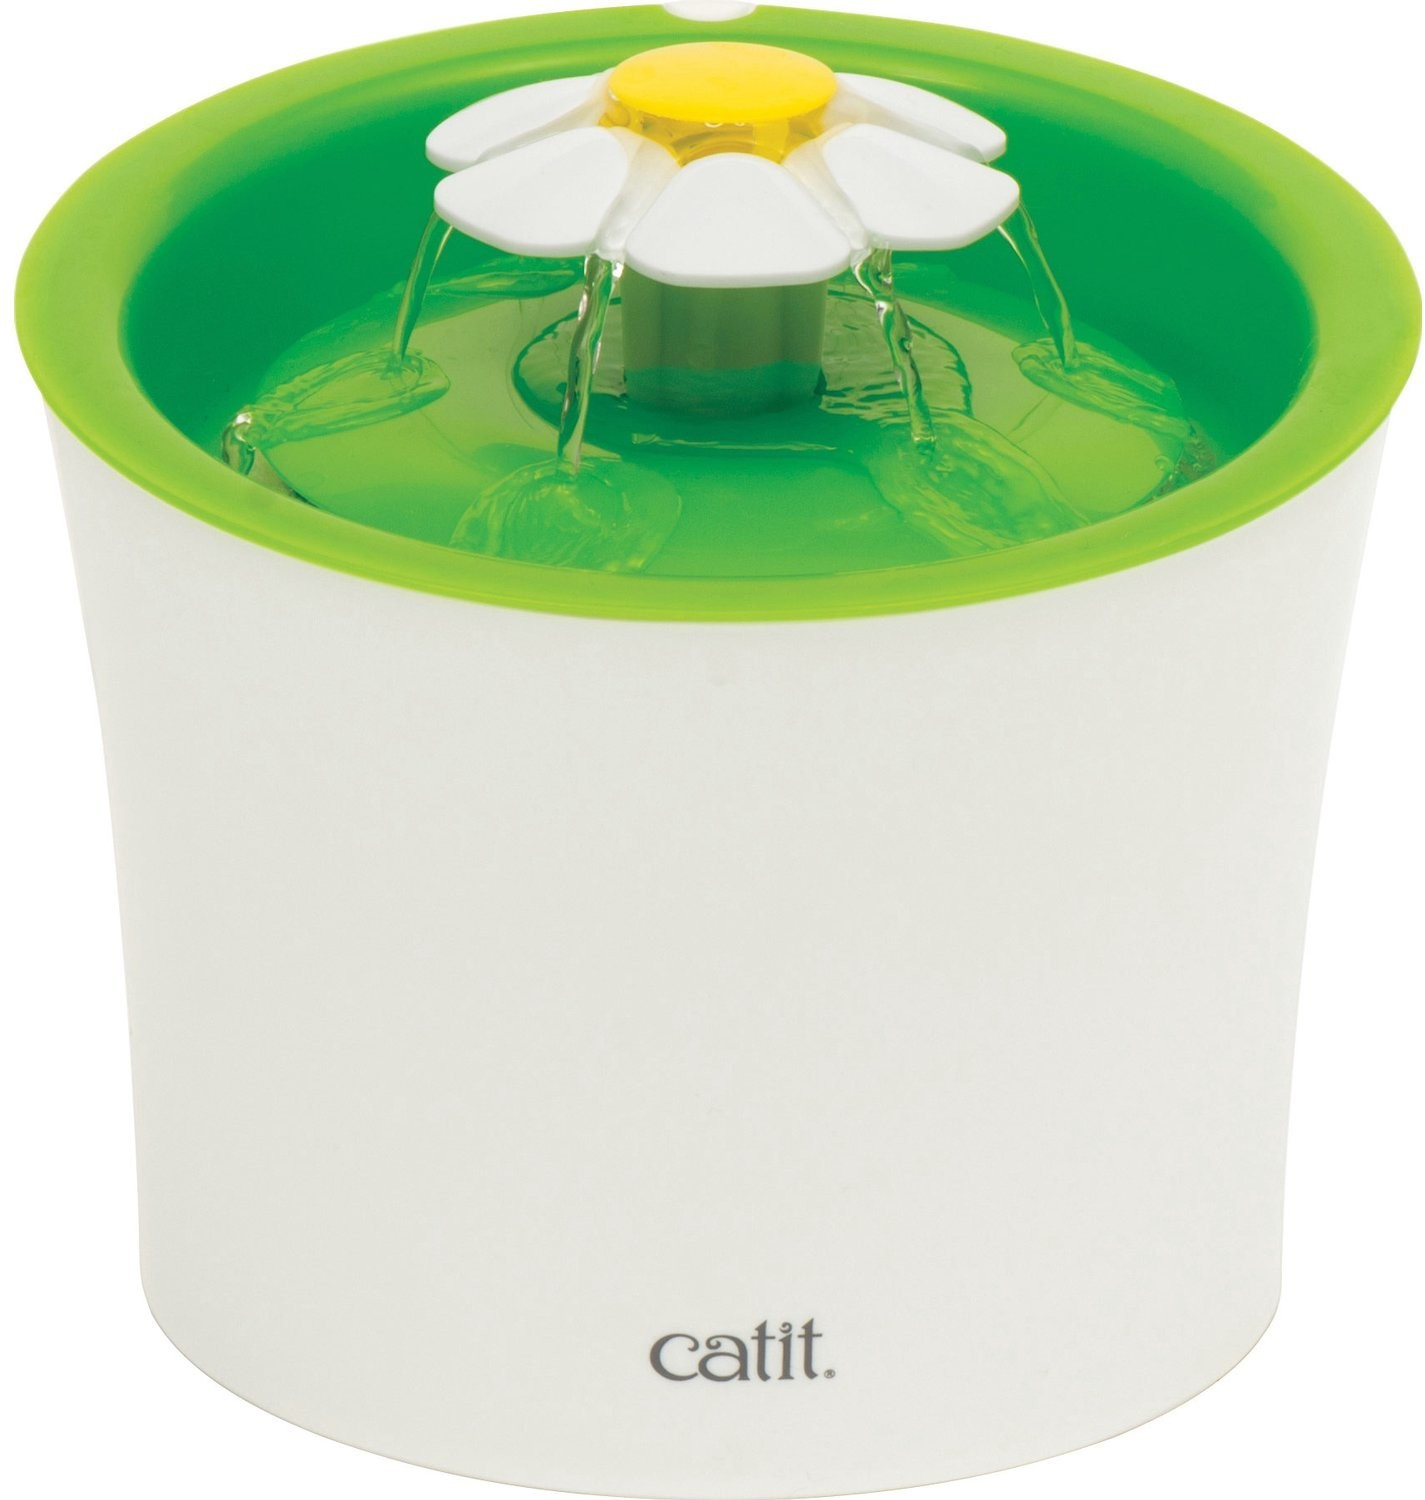 Catit Senses Drinkwell Flower 3L Green